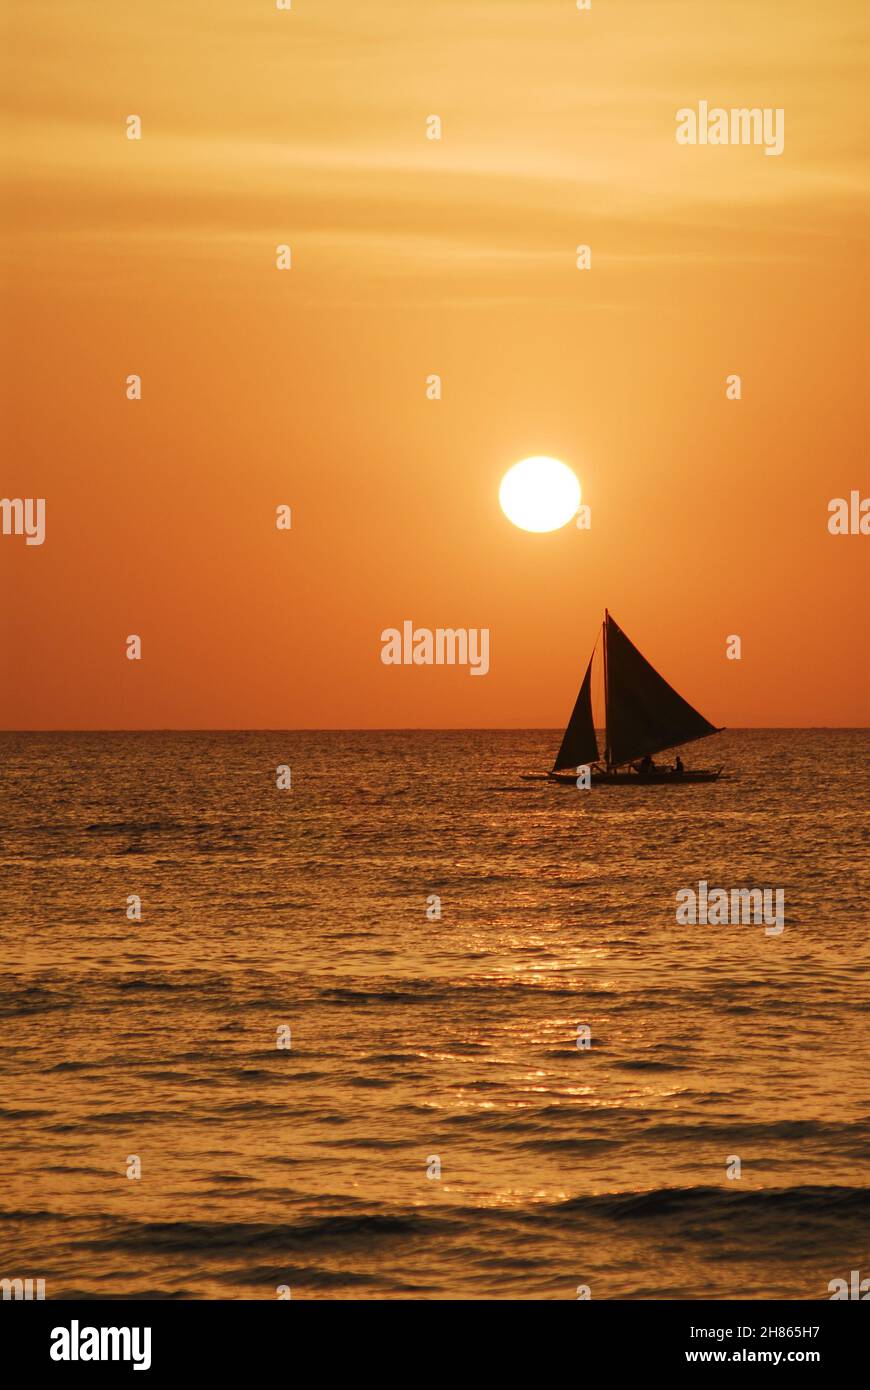 Il tramonto a Boracay offre un tramonto mozzafiato sulla spiaggia di Boracay. Un modo rilassante dopo una giornata trascorsa godendo l'atmosfera tropicale dell'isola. Foto Stock